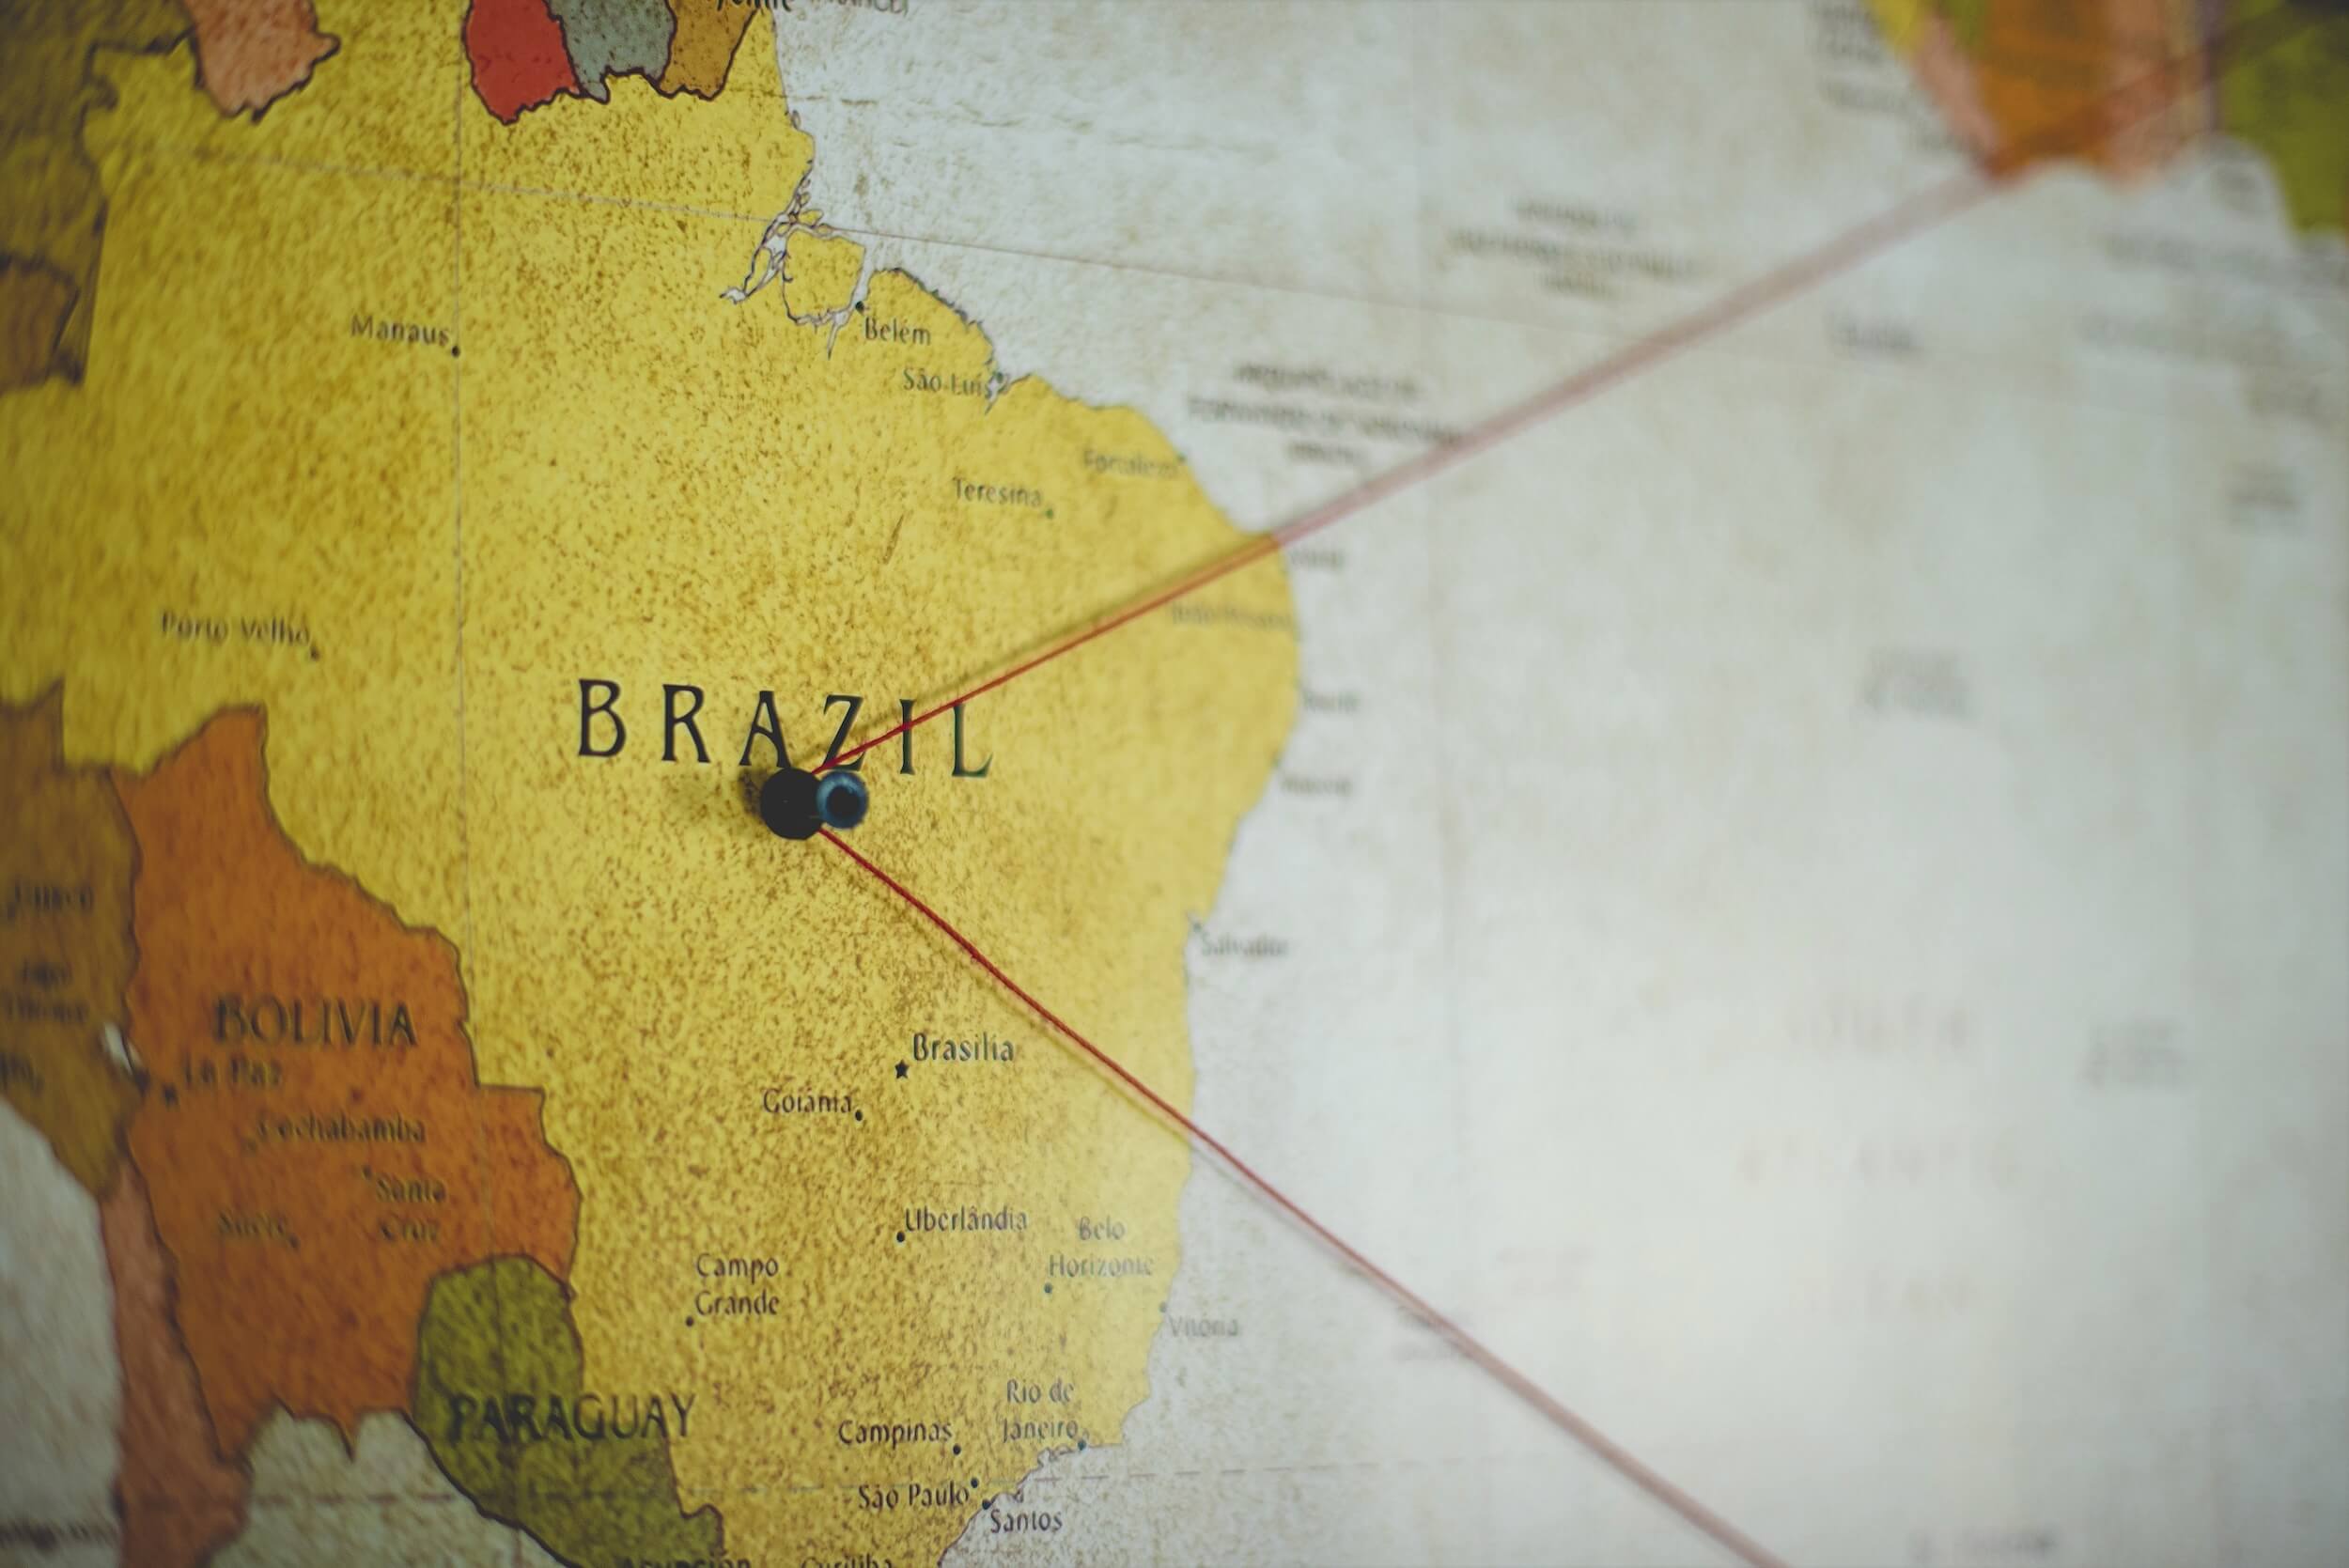 Zákernosť protekcionizmu na príklade Brazílie